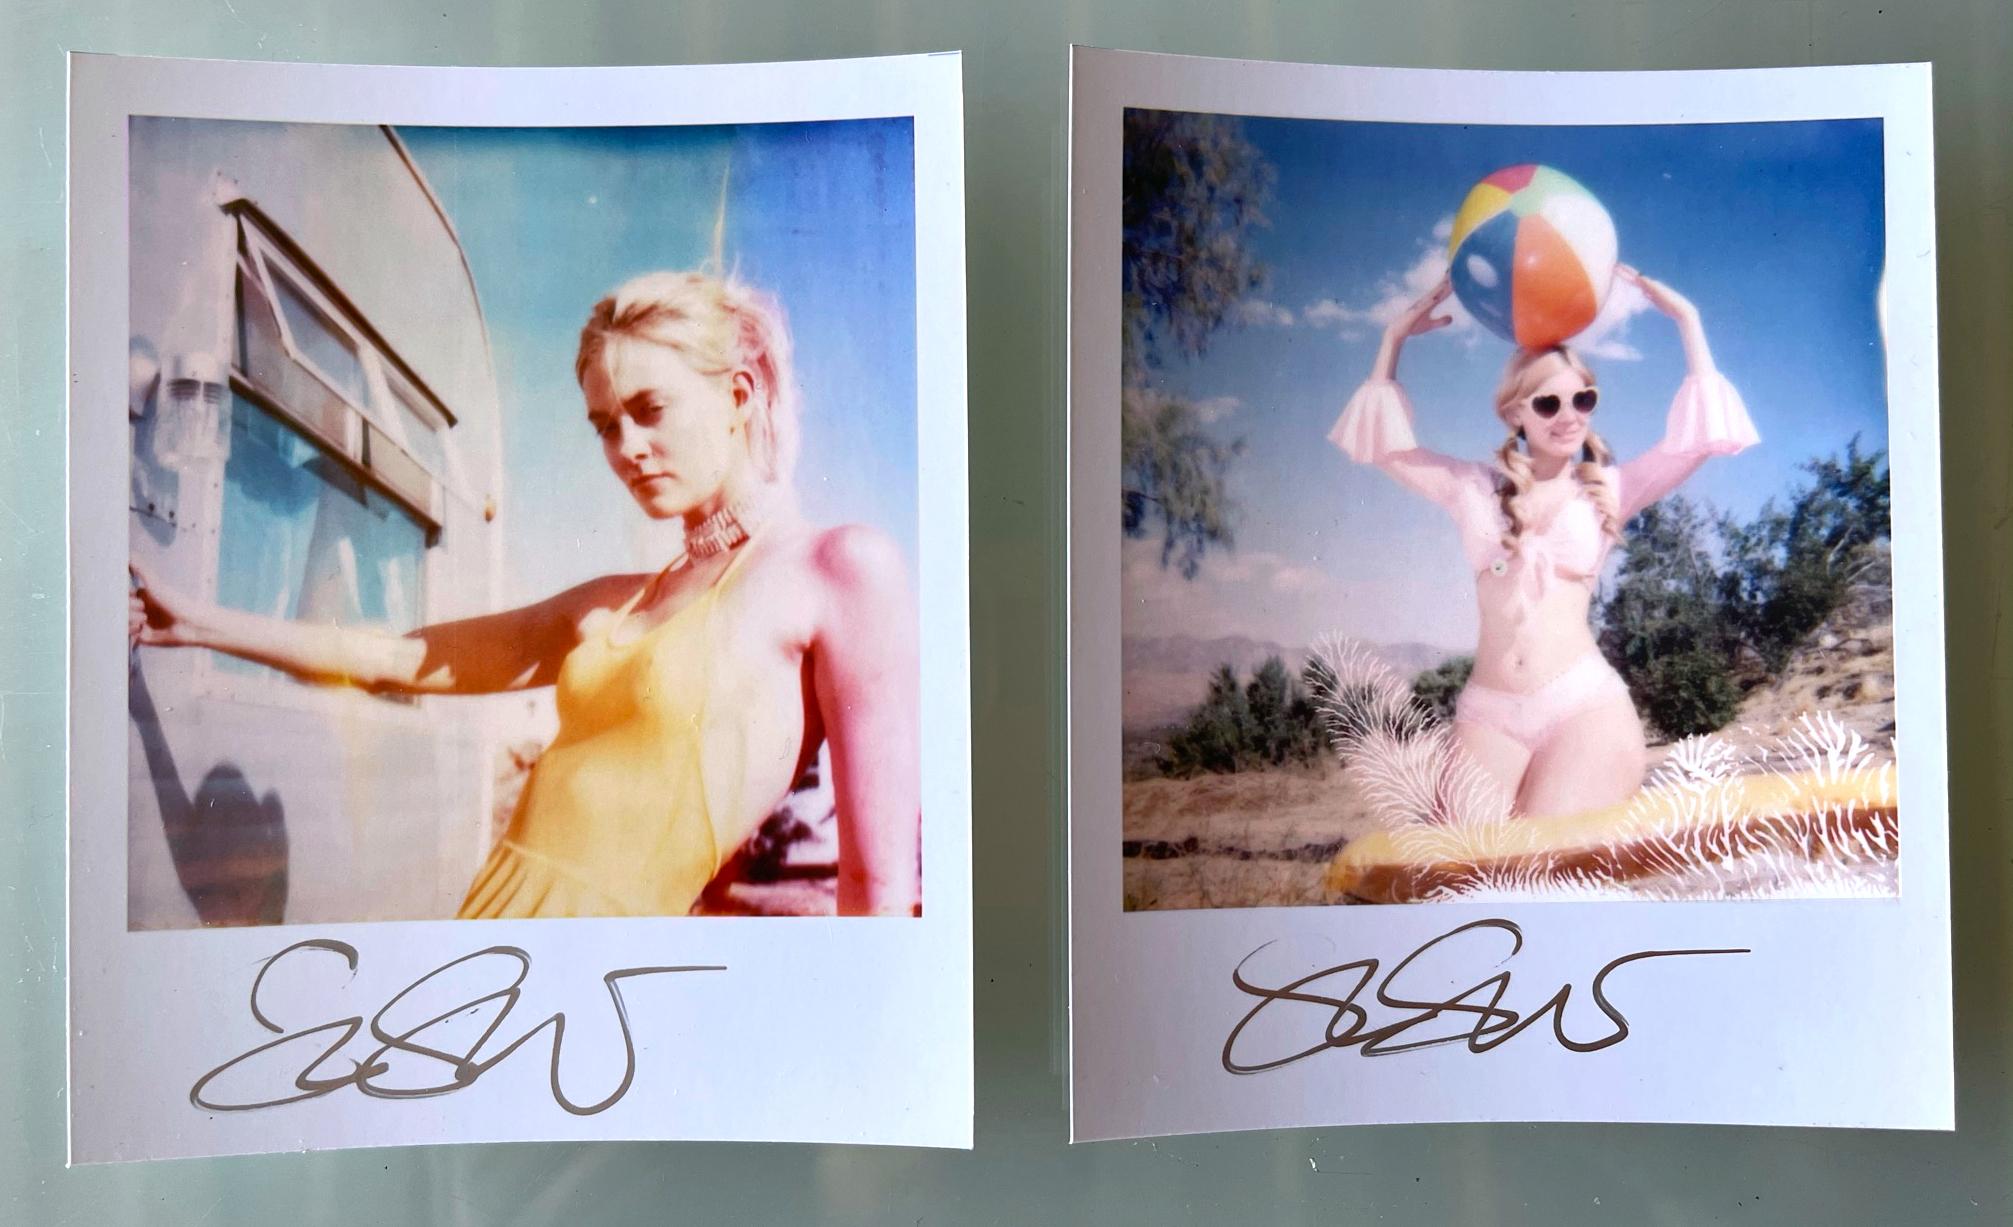 Stefanie Schneiders Mini
Caitlin alias Jane Bond & Miss Moneypenny mit Strandball (Heavenly Falls) - 2005

vorne signiert, nicht montiert. 
Digitale Farbfotografien auf der Grundlage eines Polaroids. 

Offene Editionen in Polaroidgröße